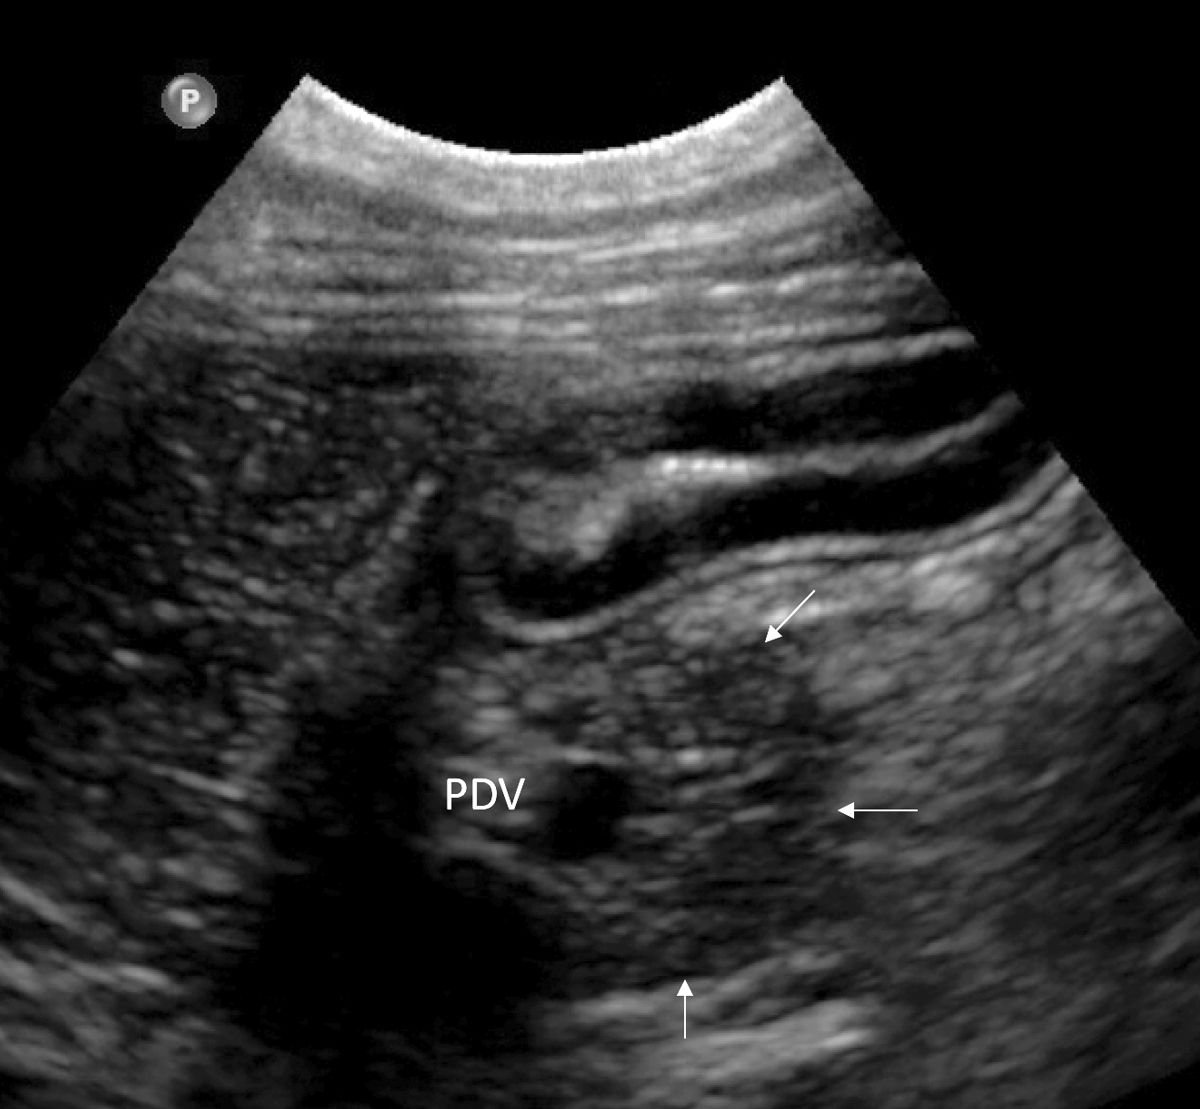 Imagen ecográfica del páncreas normal (flechas blancas) de un perro. El lóbulo pancreático derecho se encuentra junto al duodeno y se puede localizar mediante la visualización de la vena pancreaticoduodenal (PDV).